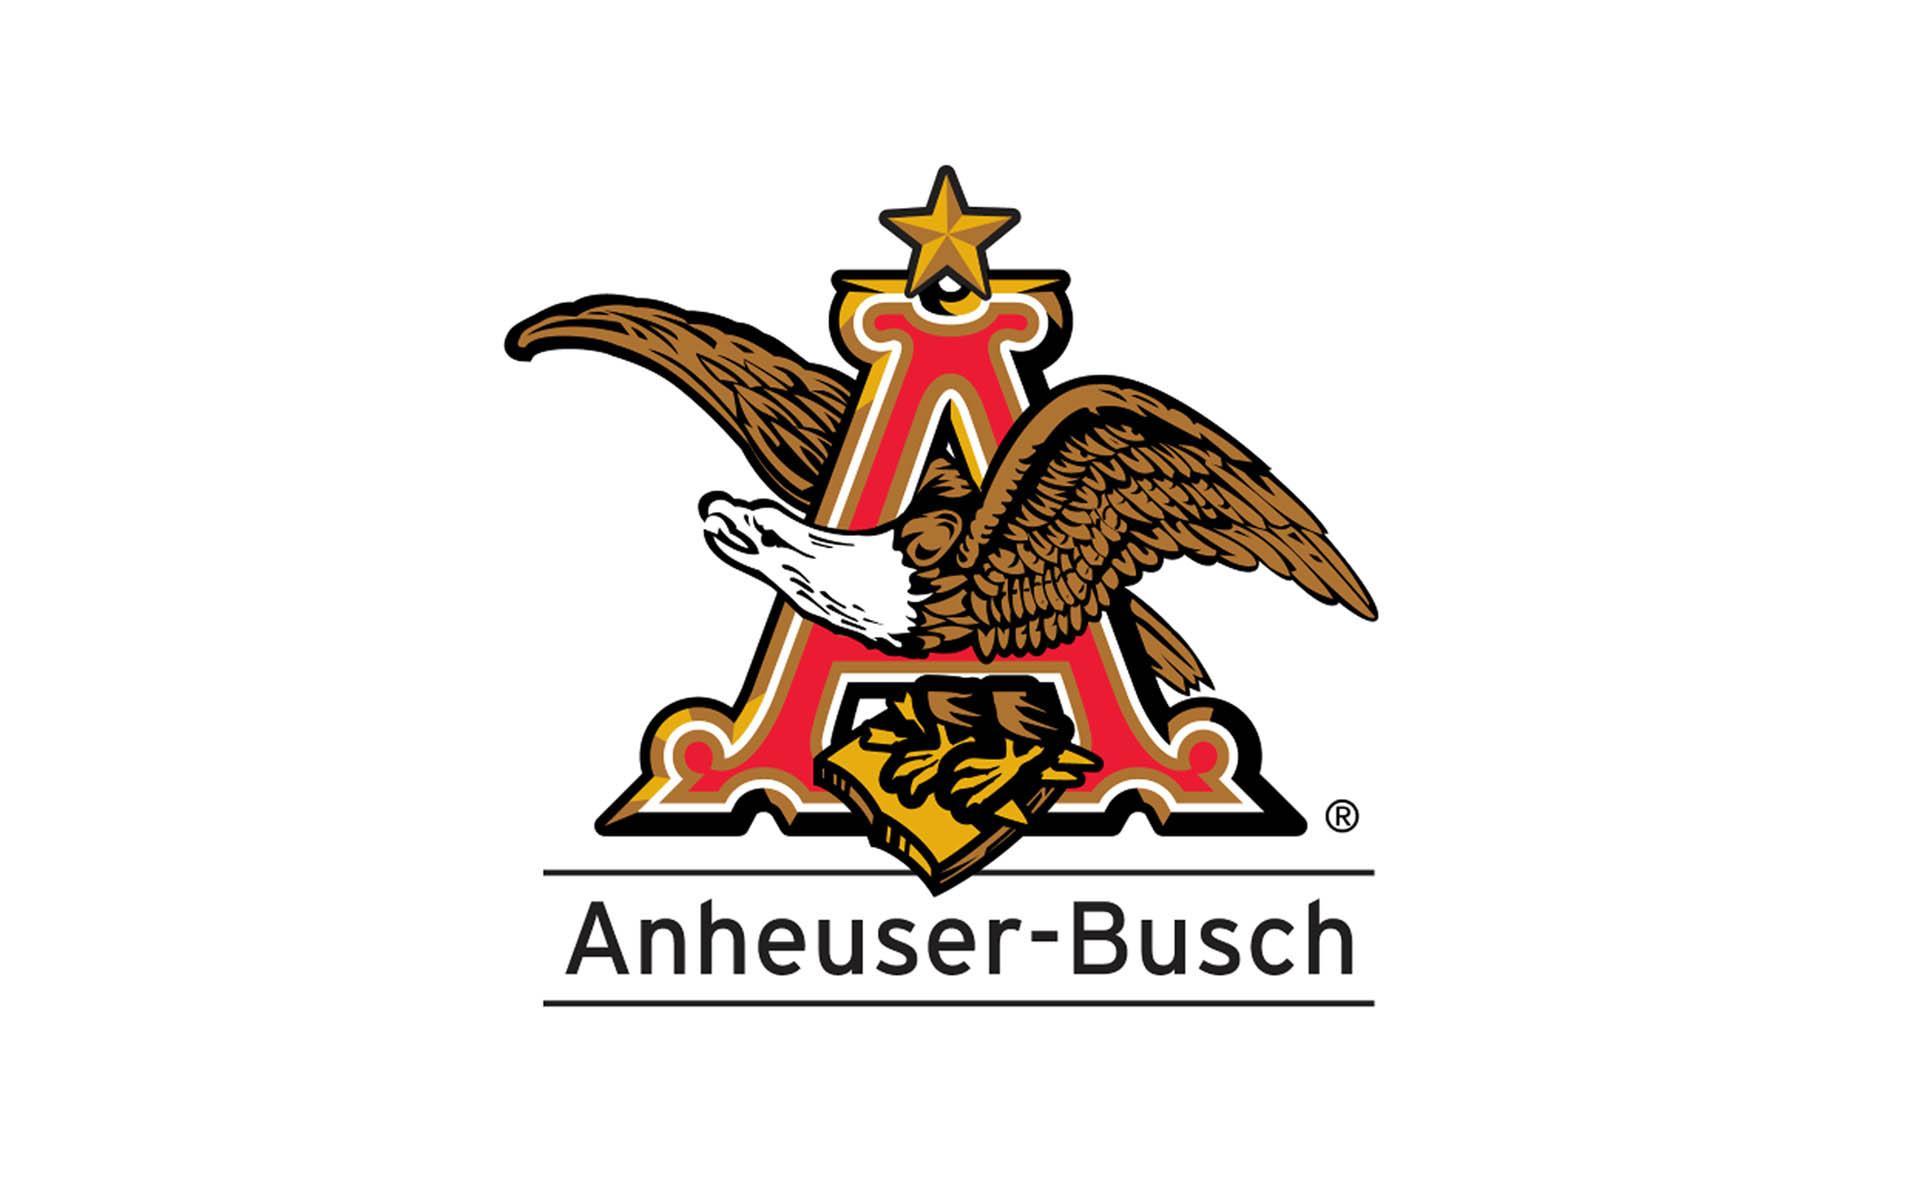 Anheuser-Busch Desktop Hd Wallpaper 4k, Anheuser-Busch, Other